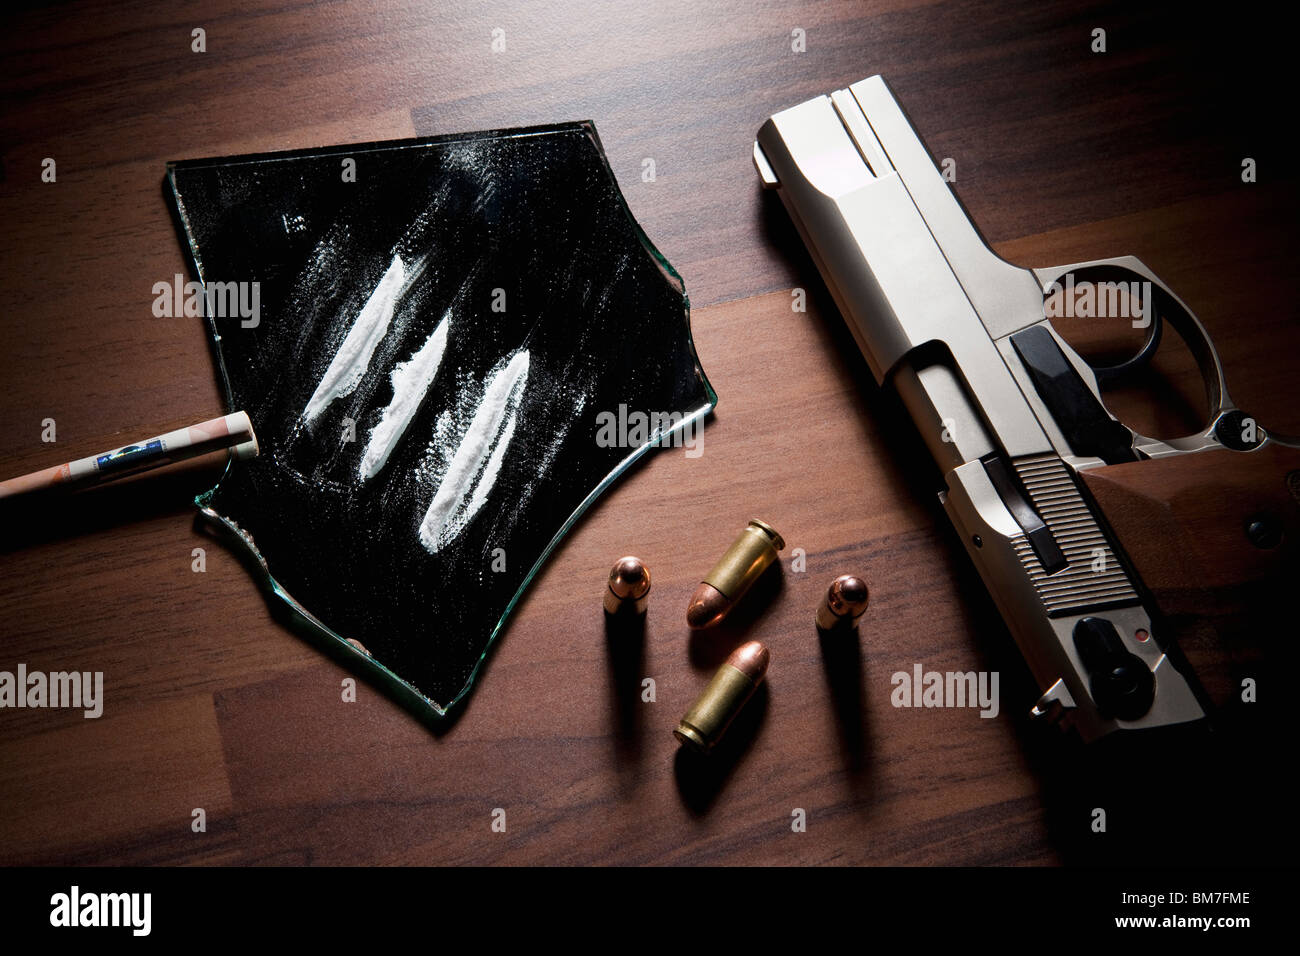 La vie encore d'une arme de poing, des balles et des lignes de cocaïne Banque D'Images